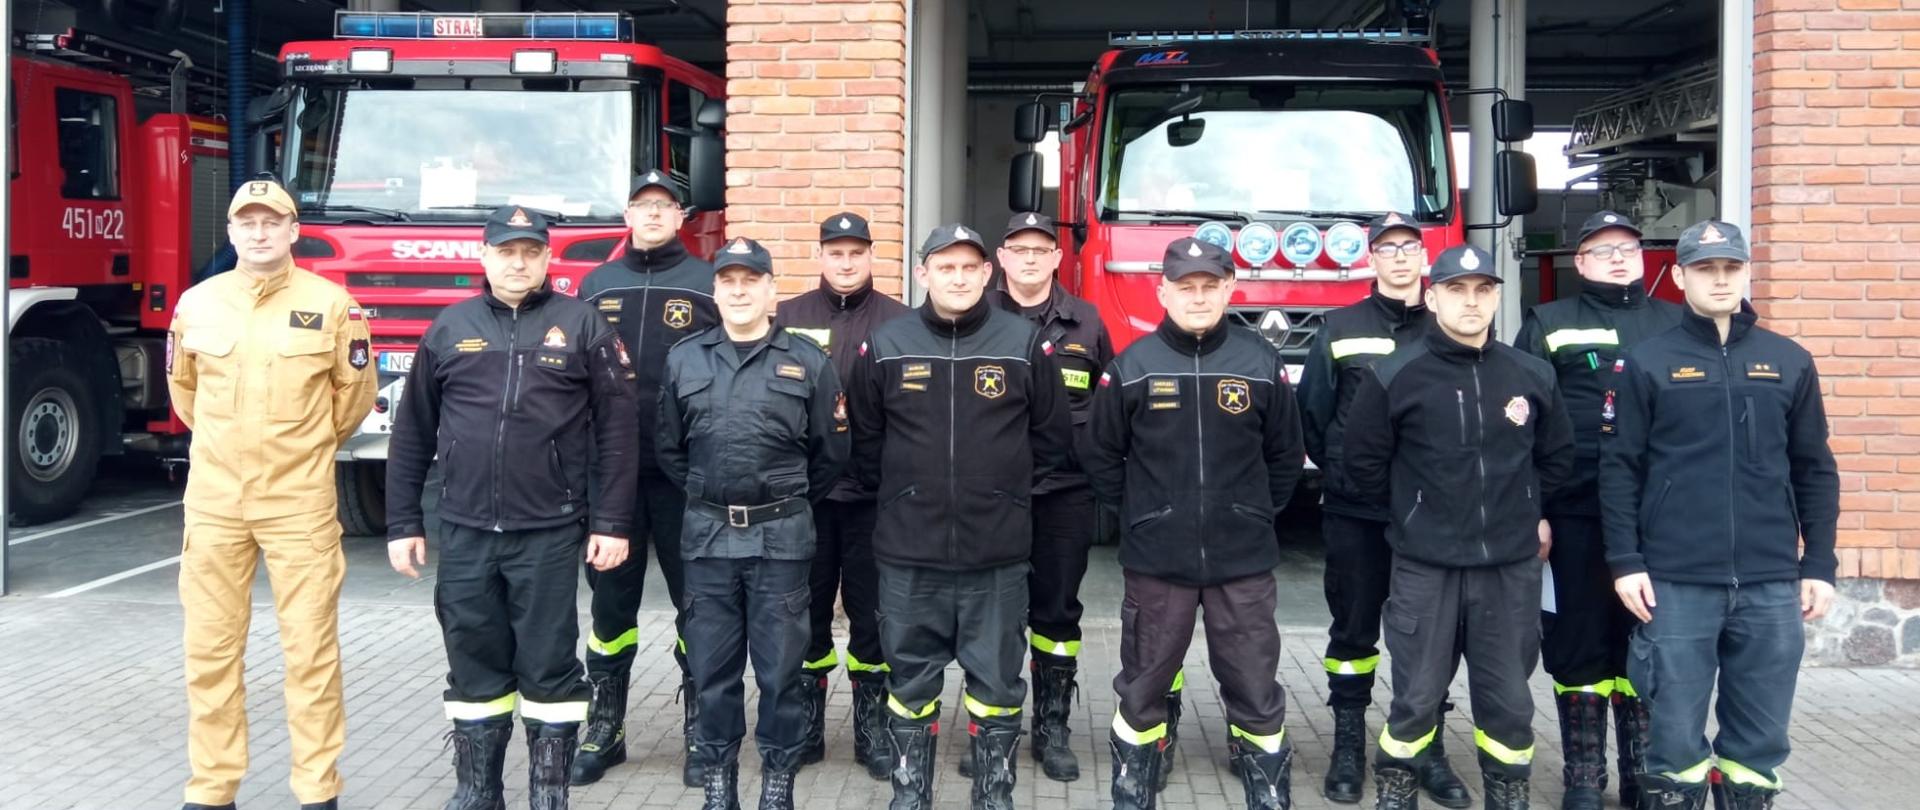 Zdjęcie przedstawia zespół egzaminacyjny oraz uczestników szkolenia kierującego działaniem ratowniczym dla strażaka ratownika Ochotniczych Straży Pożarnych (dowódcy OSP), ustytuowanych na tle pojazdów pożarniczych zlokalizowanych w garażu Komendy Powiatowej Państwowej Straży Pożarnej w Gołdapi